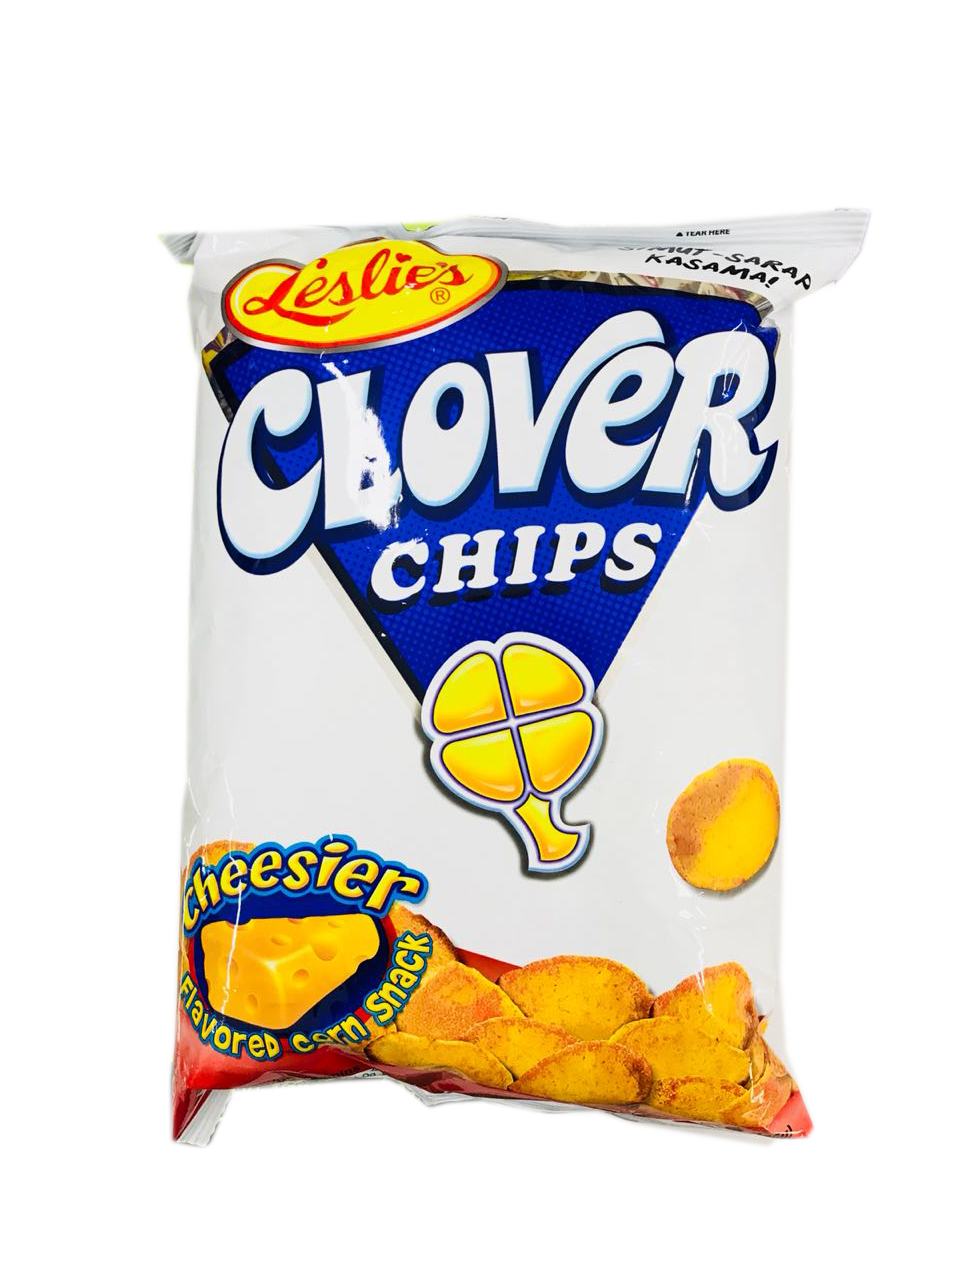 Leslie Clover Chips Cheesier 145g